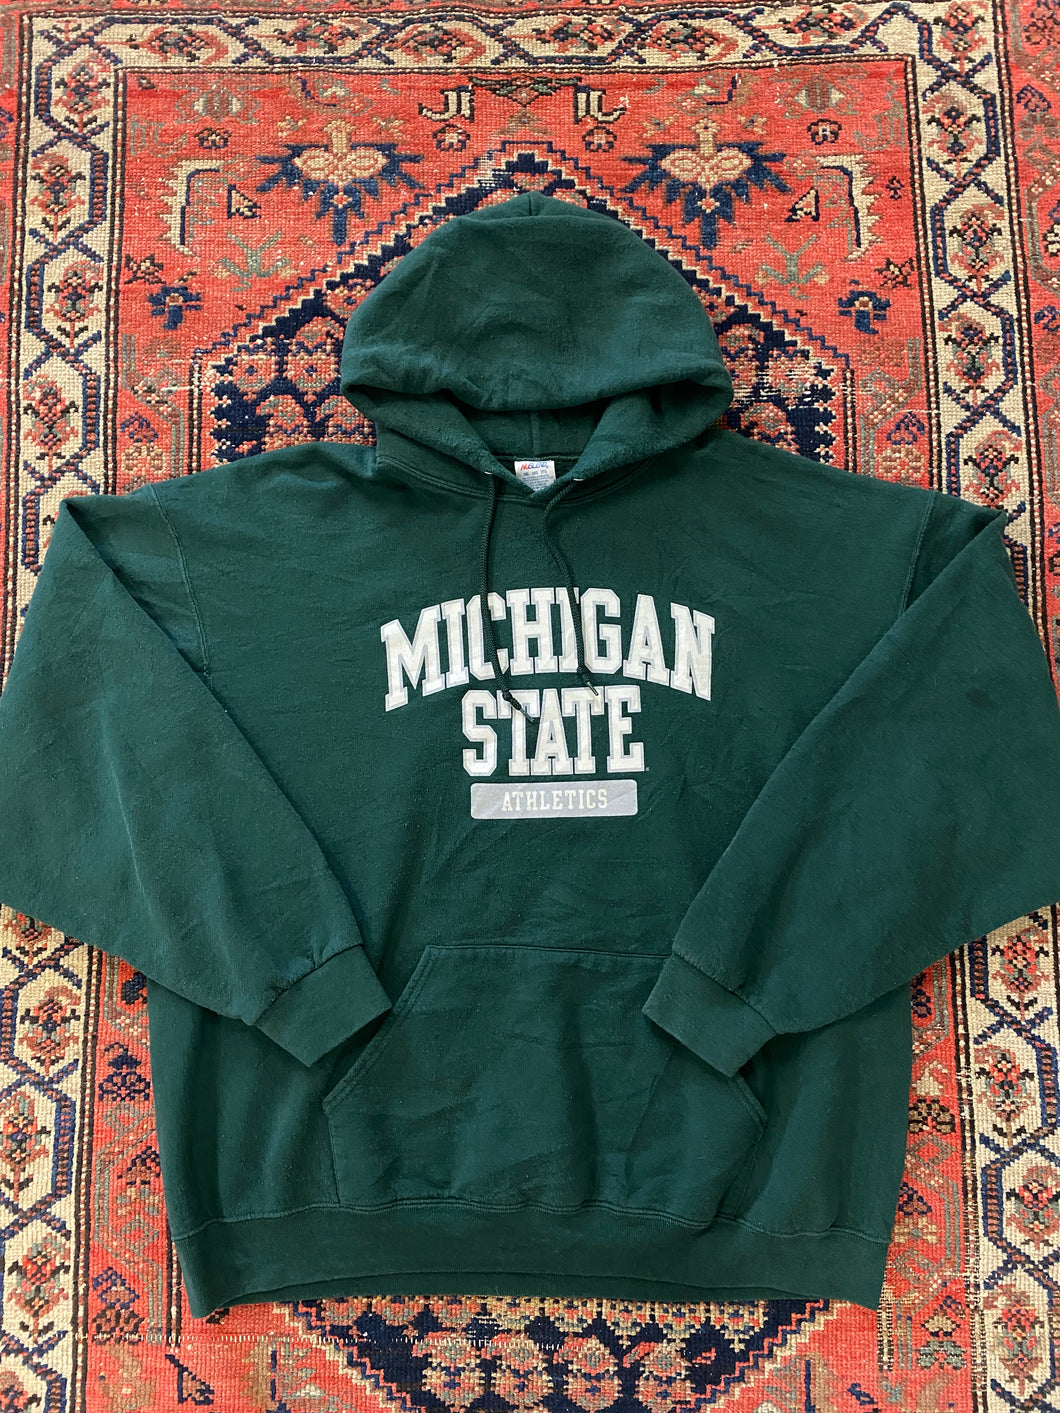 Vintage Michigan State Hoodie - L